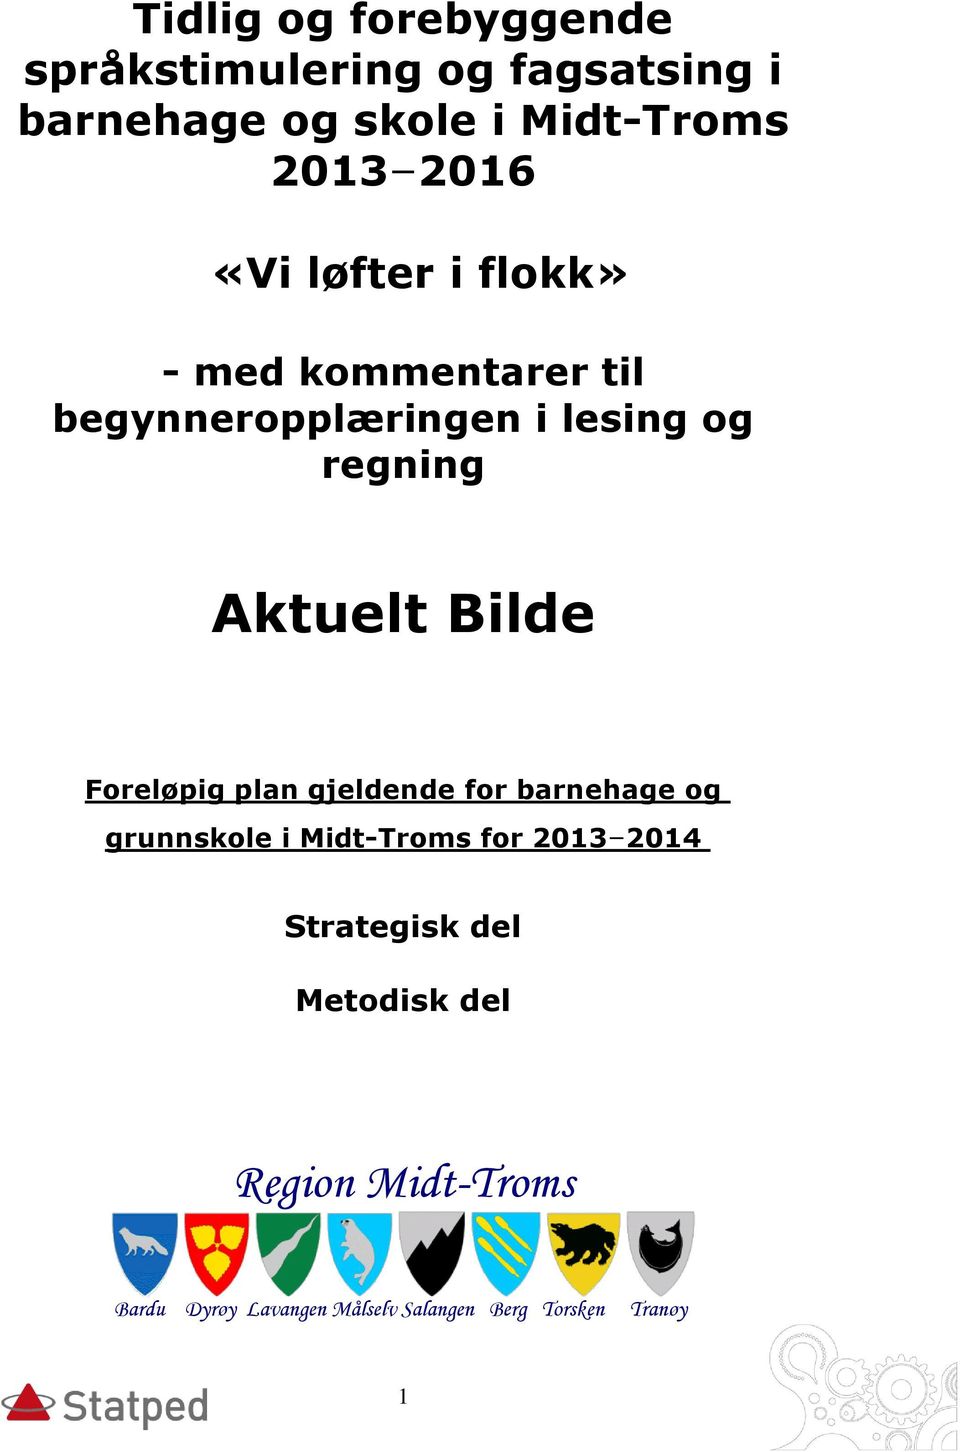 Bilde Foreløpig plan gjeldende for barnehage og grunnskole i Midt-Troms for 2013 2014